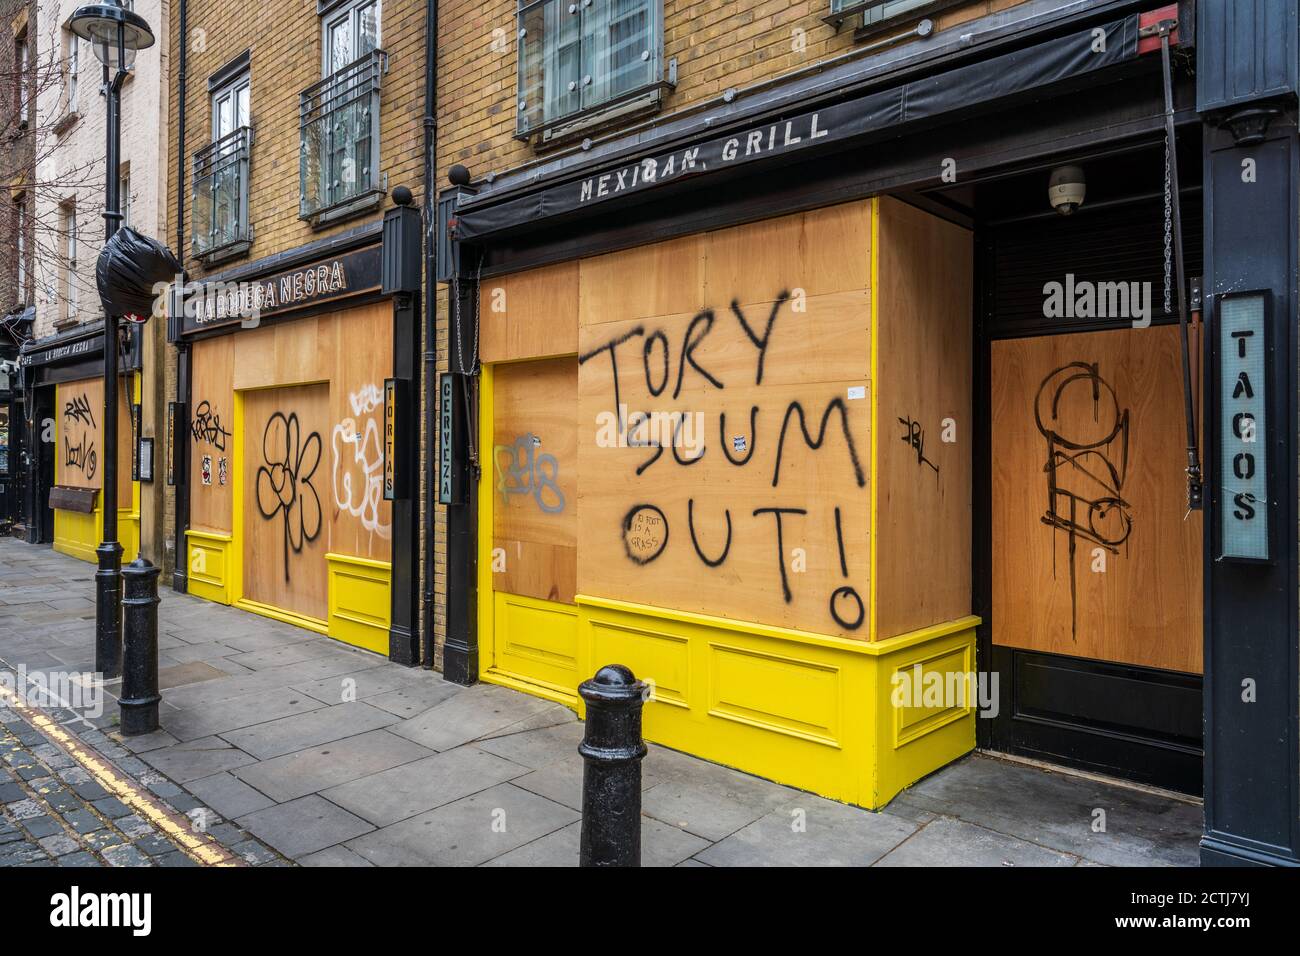 Londres Lockdown - se embarcó en restaurantes en el distrito Soho de Londres durante el Coronavirus Pandemic Lockdown - anti-graffiti gubernamental en las hordas. Foto de stock